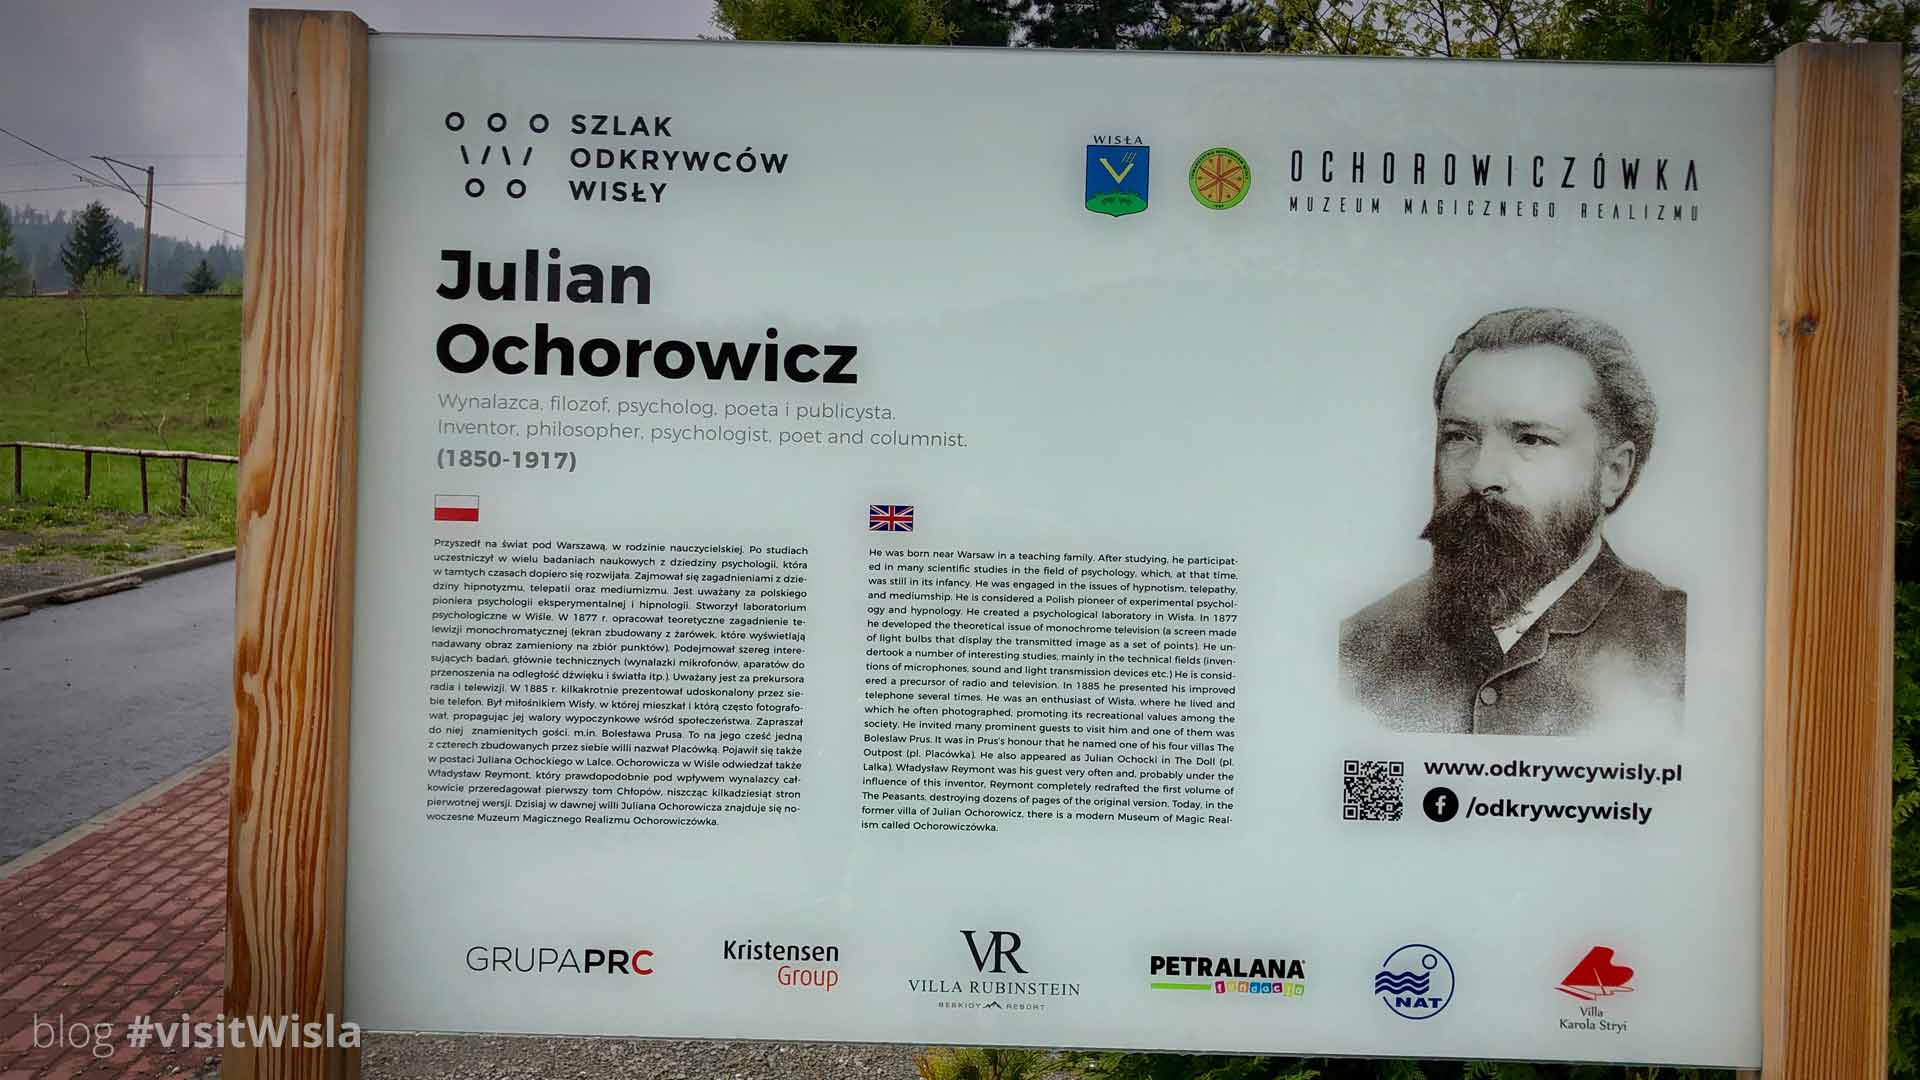 Jedna z tablic Szlaku Odkrywców Wisły, poświecona Julianowi Ochorowiczowi.